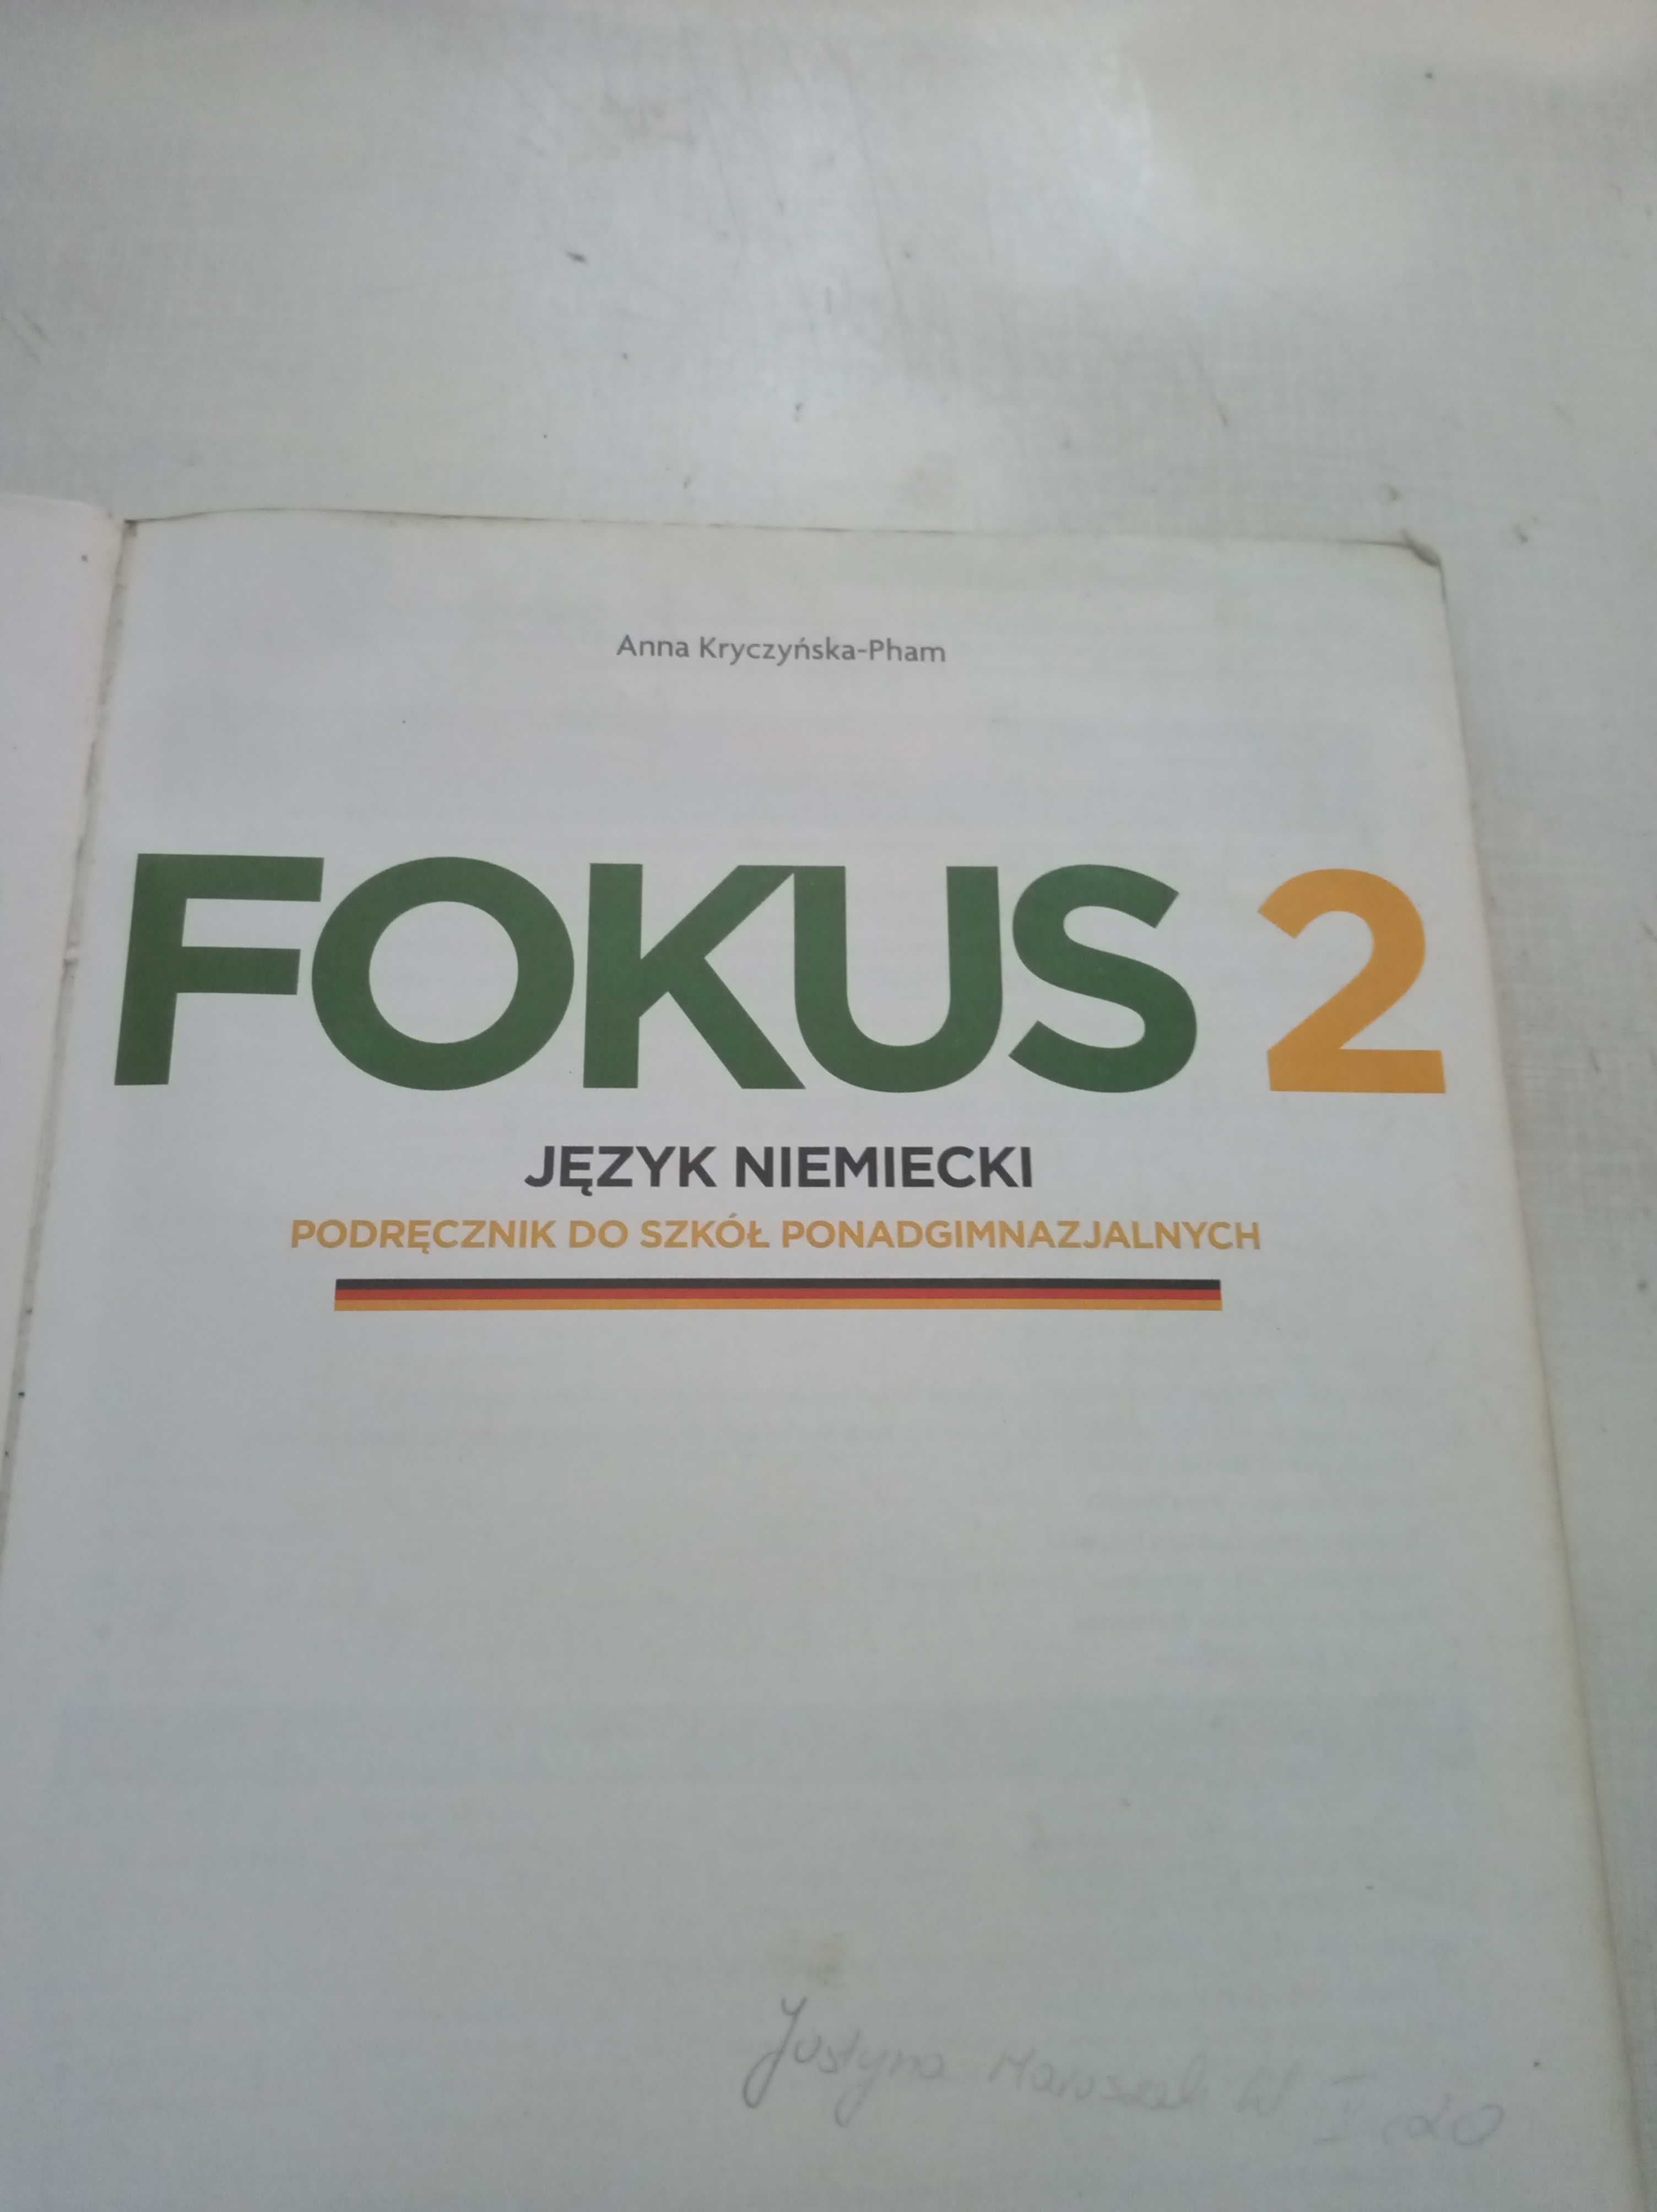 Podręcznik Fokus 2 j. niemiecki